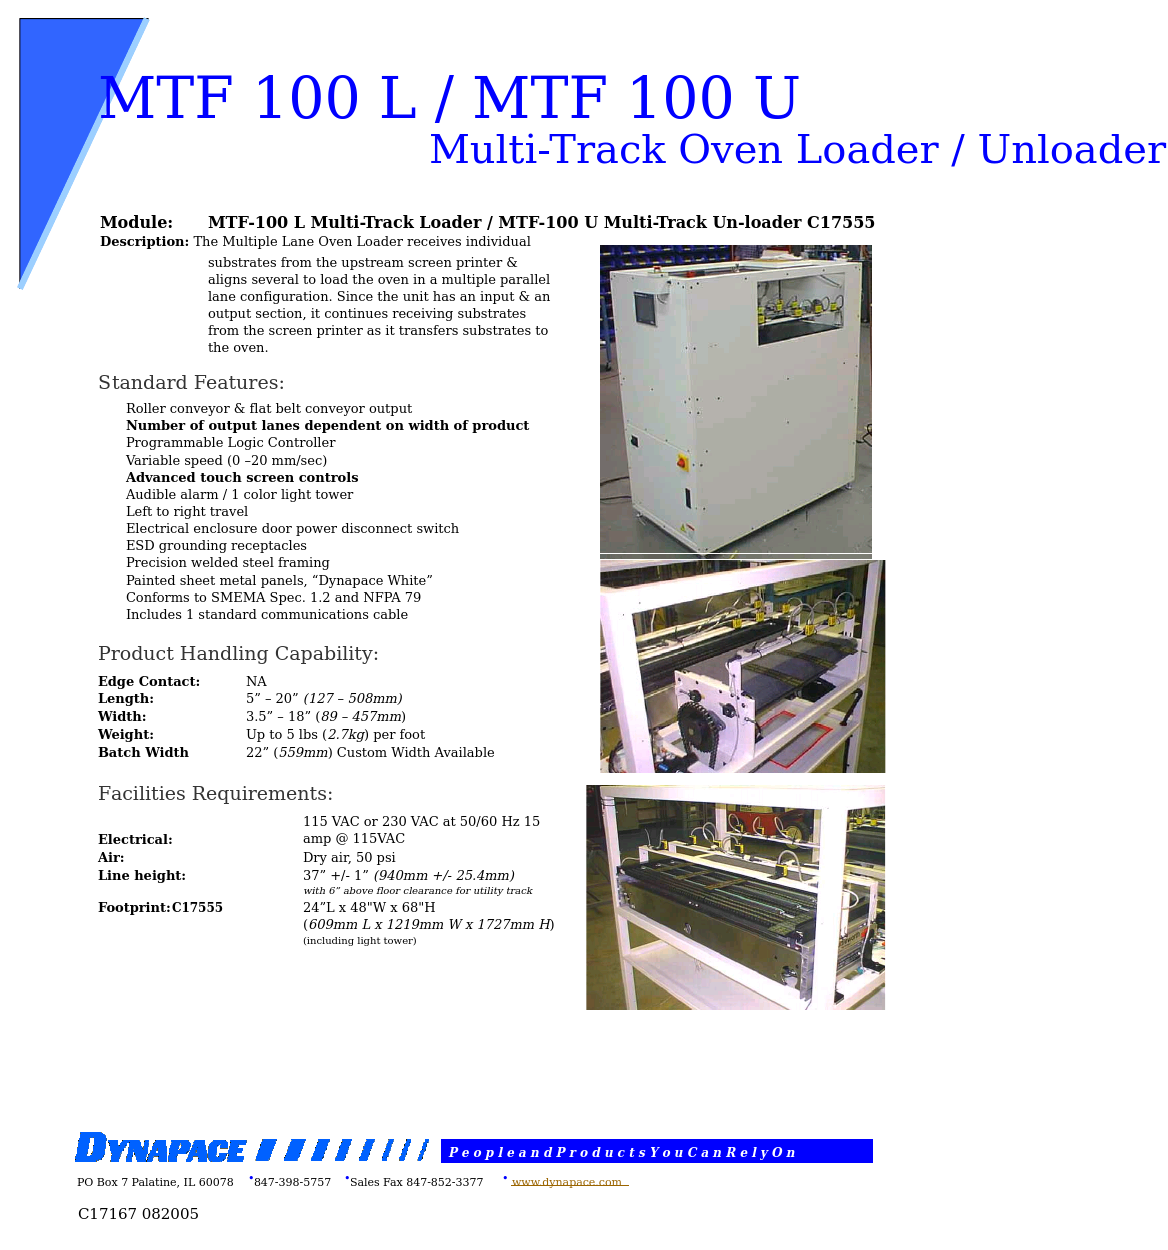 Multi Lane Oven Loader and Unloader